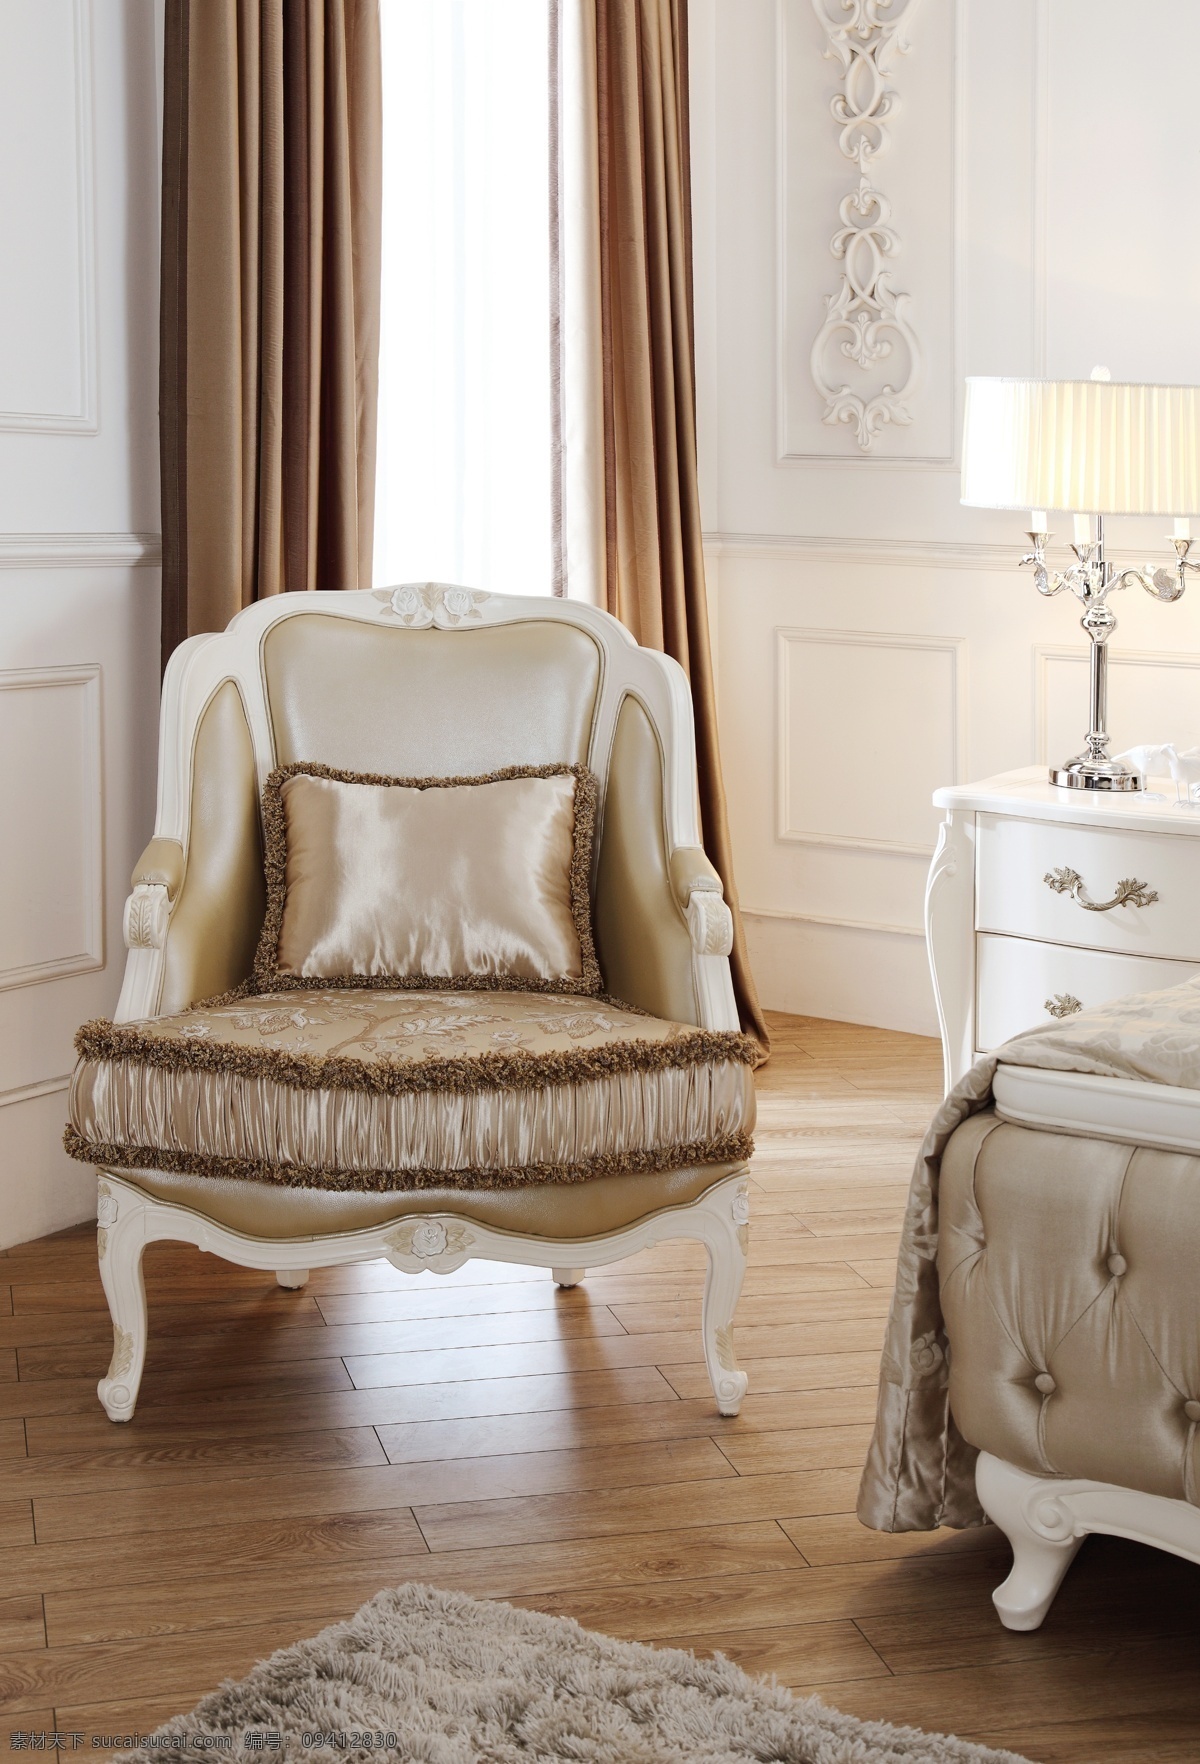 家居生活 欧式饰品 生活百科 法式 家具 法式家具 法式休闲椅 白色家具 欧式风格家居 家居装饰素材